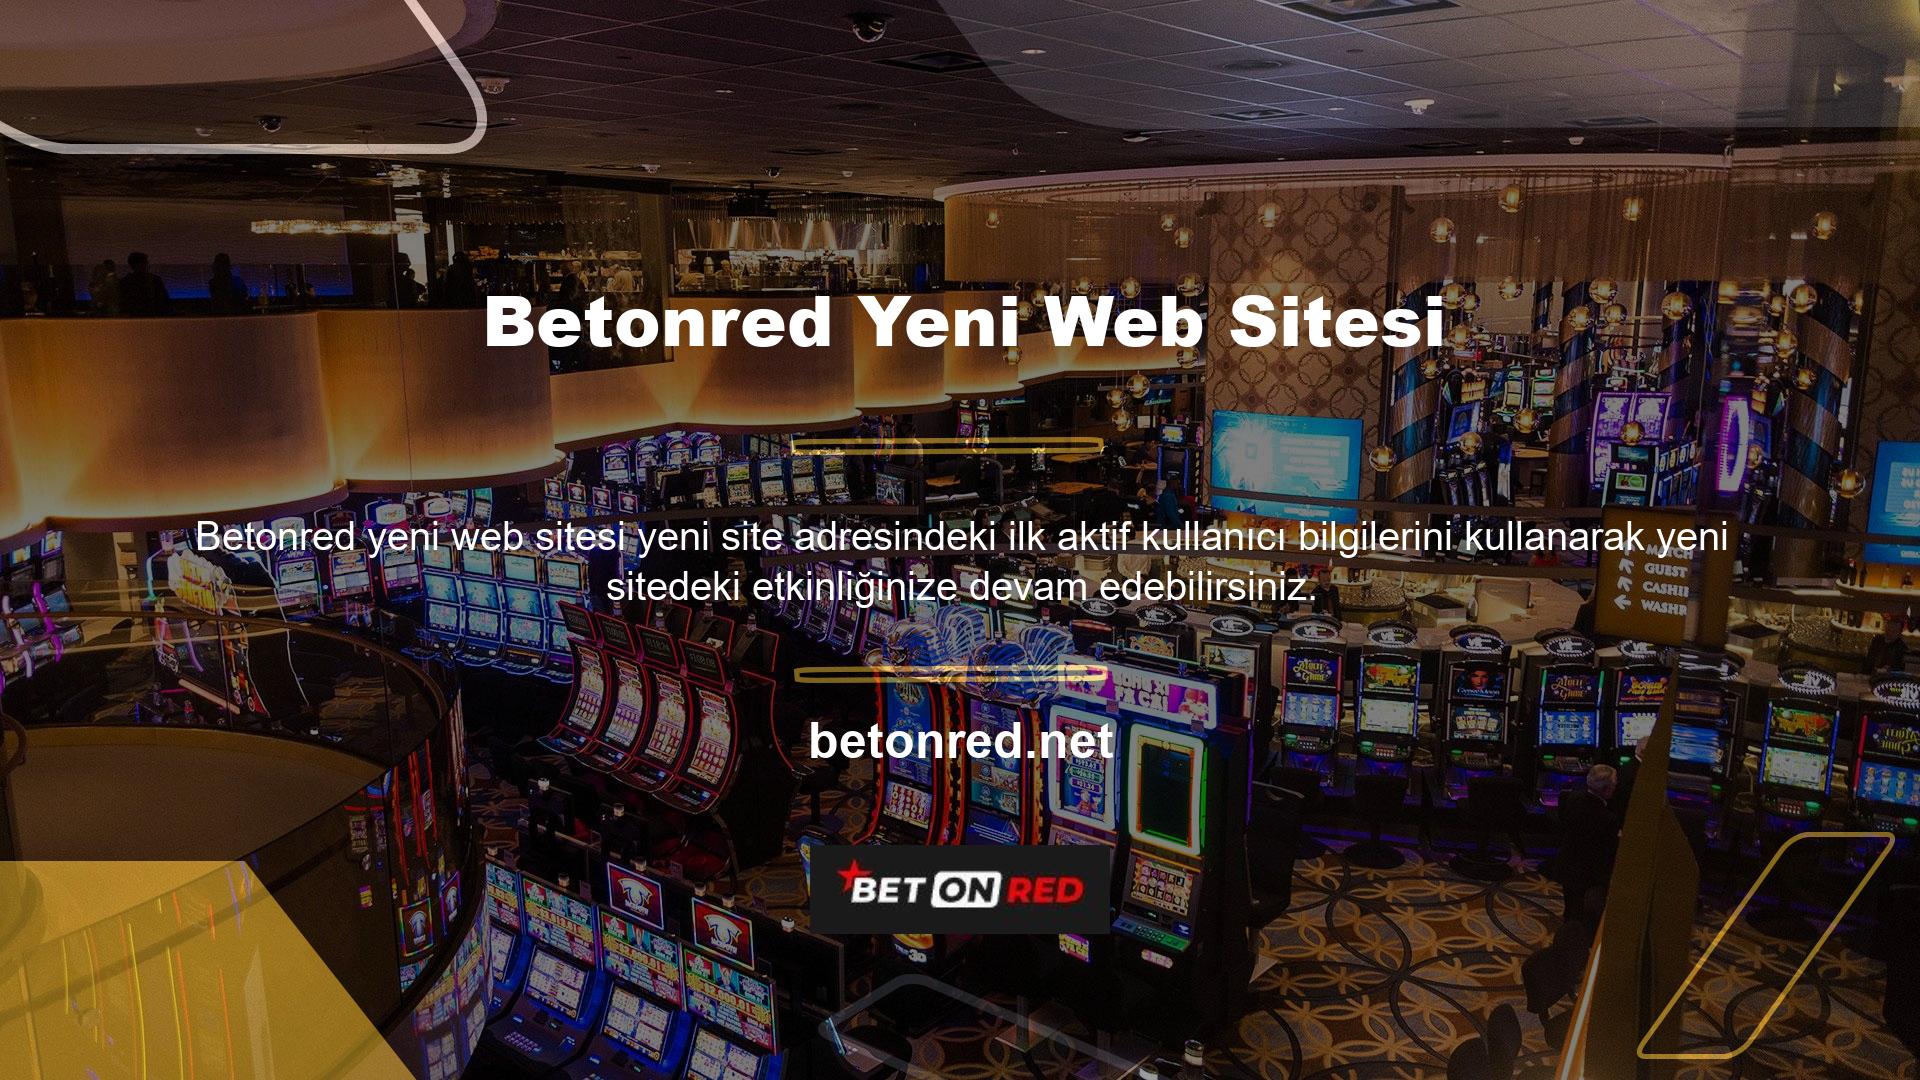 Betonred Casino ve Oyunlar sitesinin yeni adresini görmek, sitenin güncel adresini görmek ve bu sitenin kullanıcılarına sunduğu günlük bonuslardan yararlanmak için bu sitenin sosyal ağlarını takip edebilirsiniz